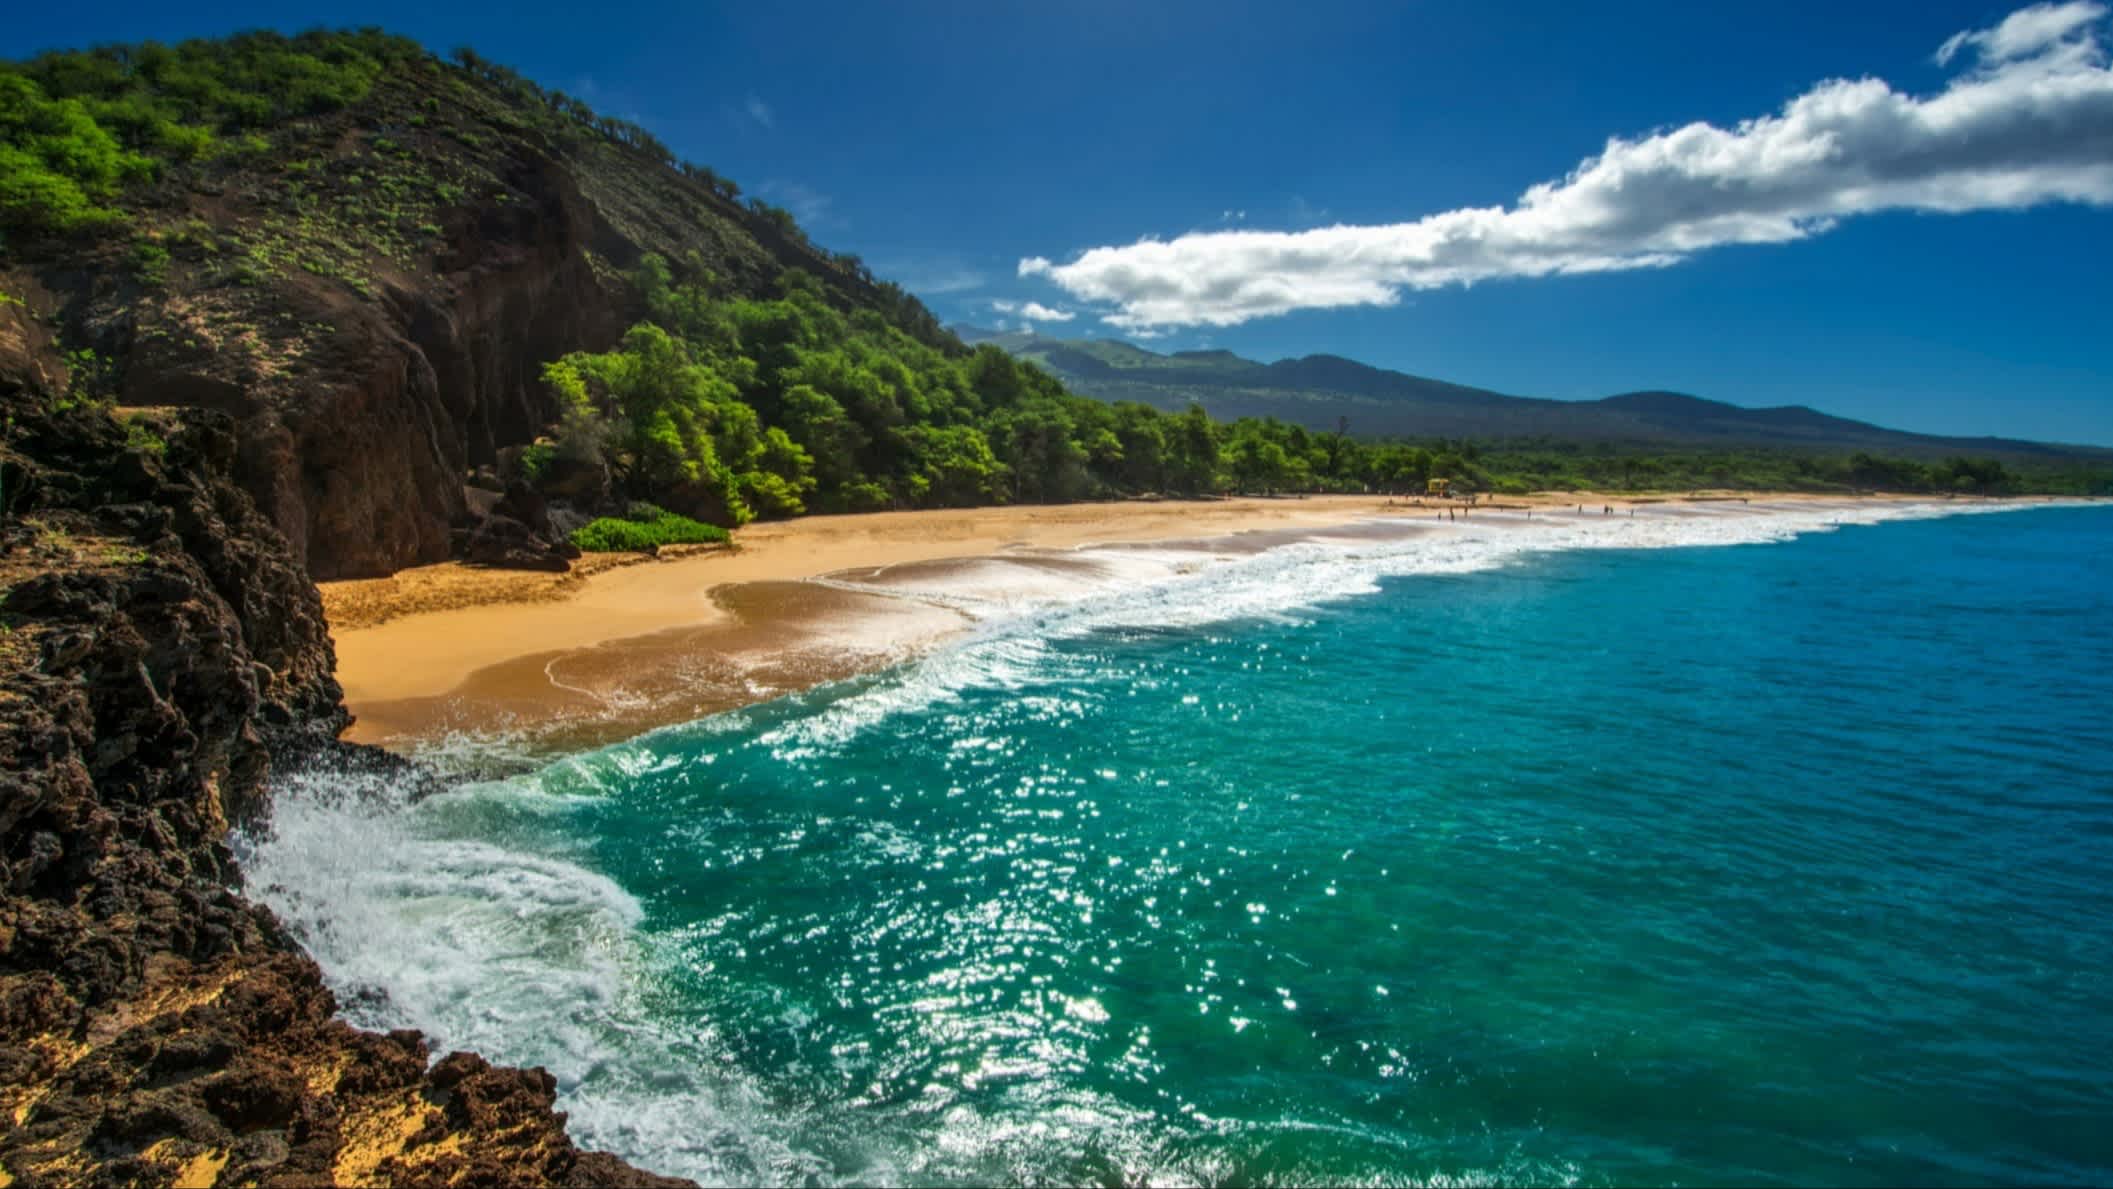 Der Strand Oneloa-Strand, Maui, Hawaii, USA bei klarem Himmel und mit Blick auf das Meer sowie die umliegende felsig-grüne Landschaft.